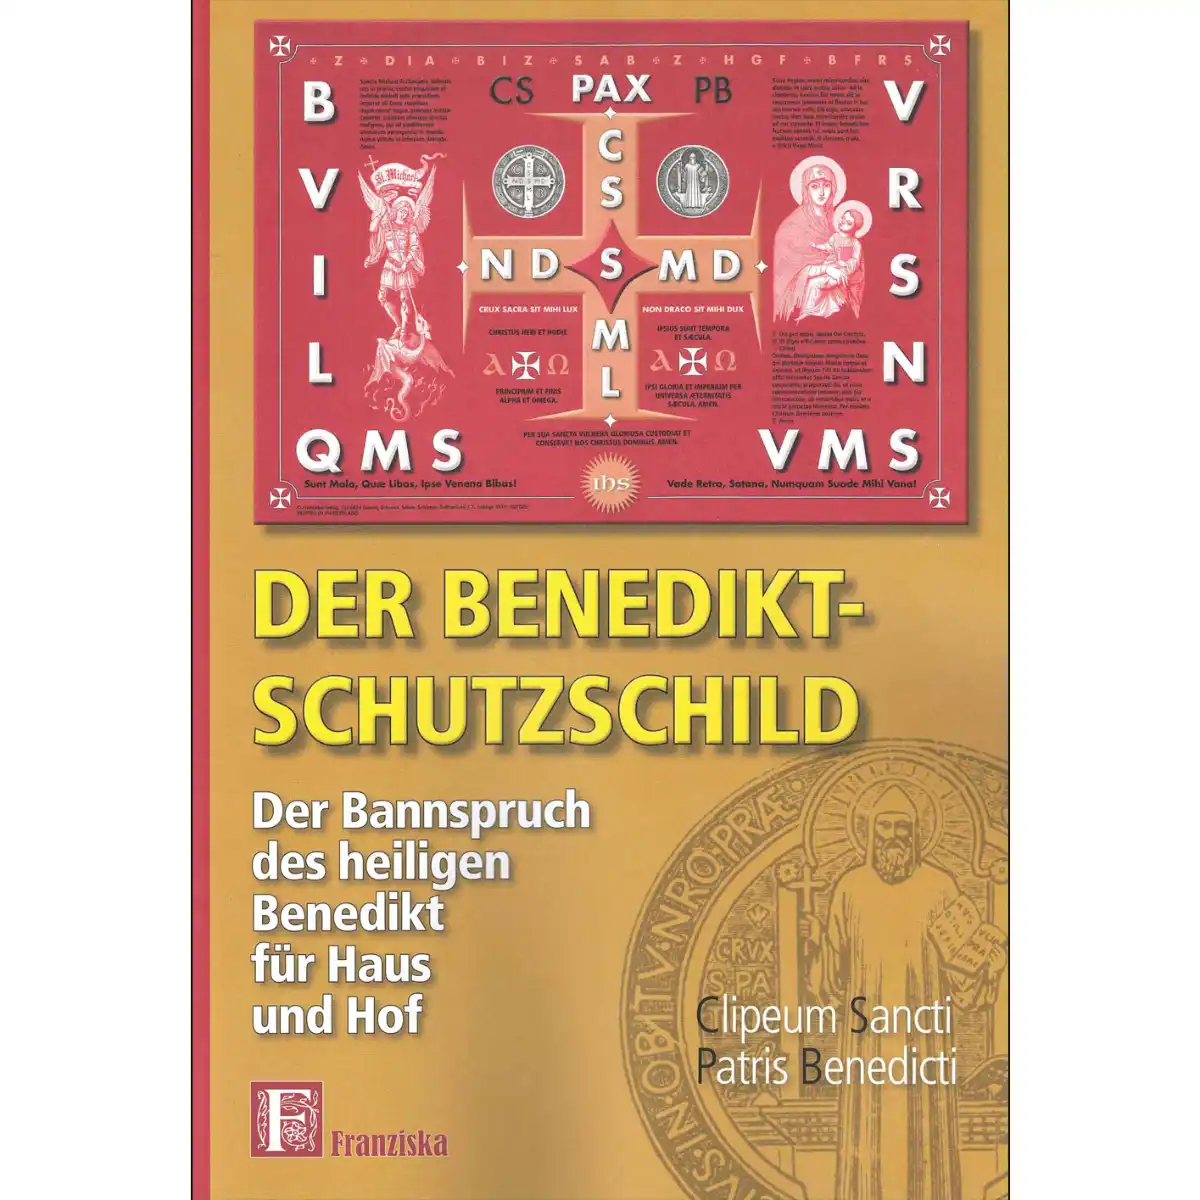 Broschüre plus 3 geweihte Benedikt Schutzschilde